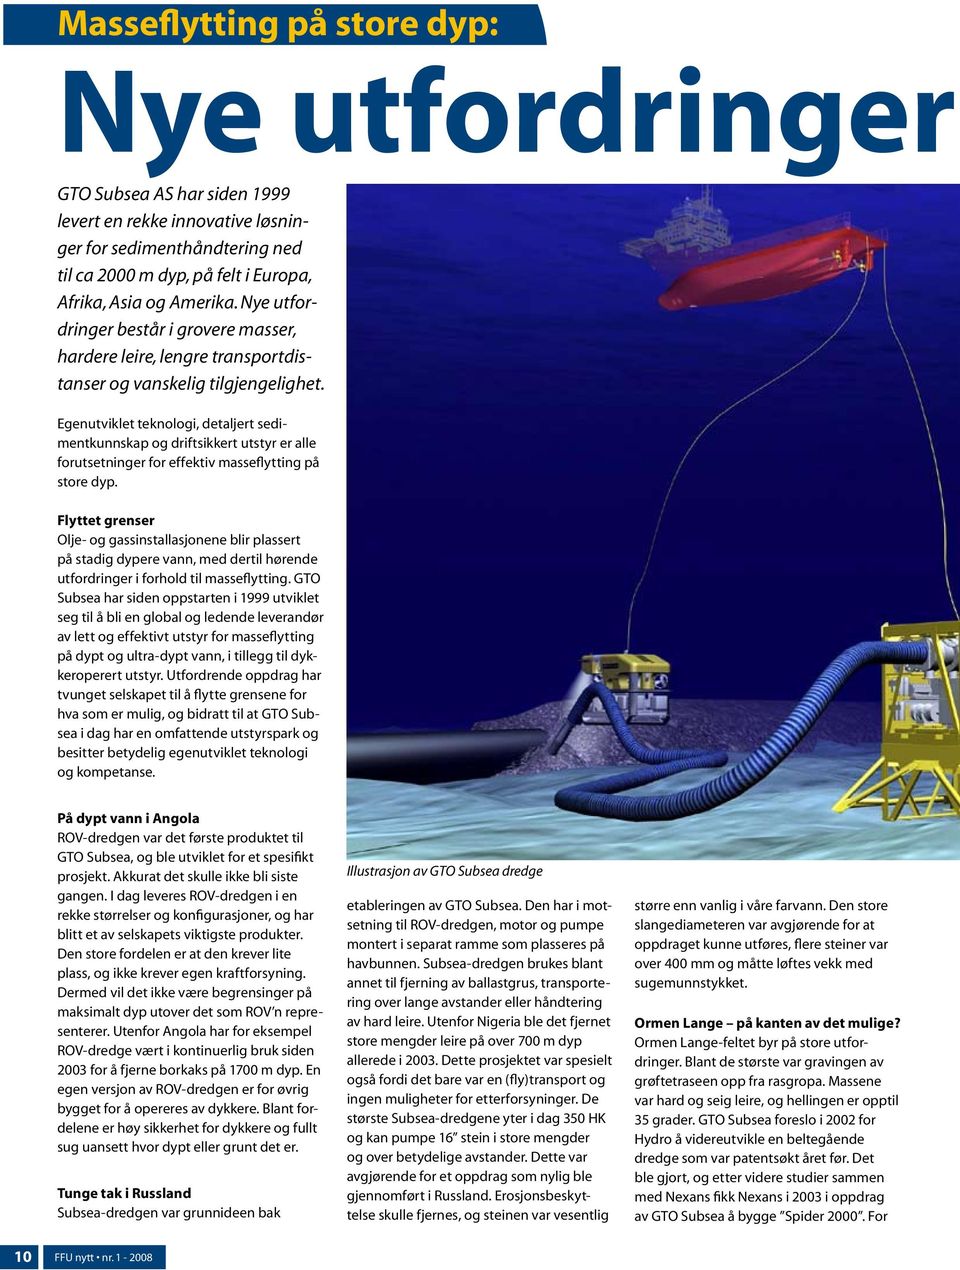 Egenutviklet teknologi, detaljert sedimentkunnskap og driftsikkert utstyr er alle forutsetninger for effektiv masseflytting på store dyp.